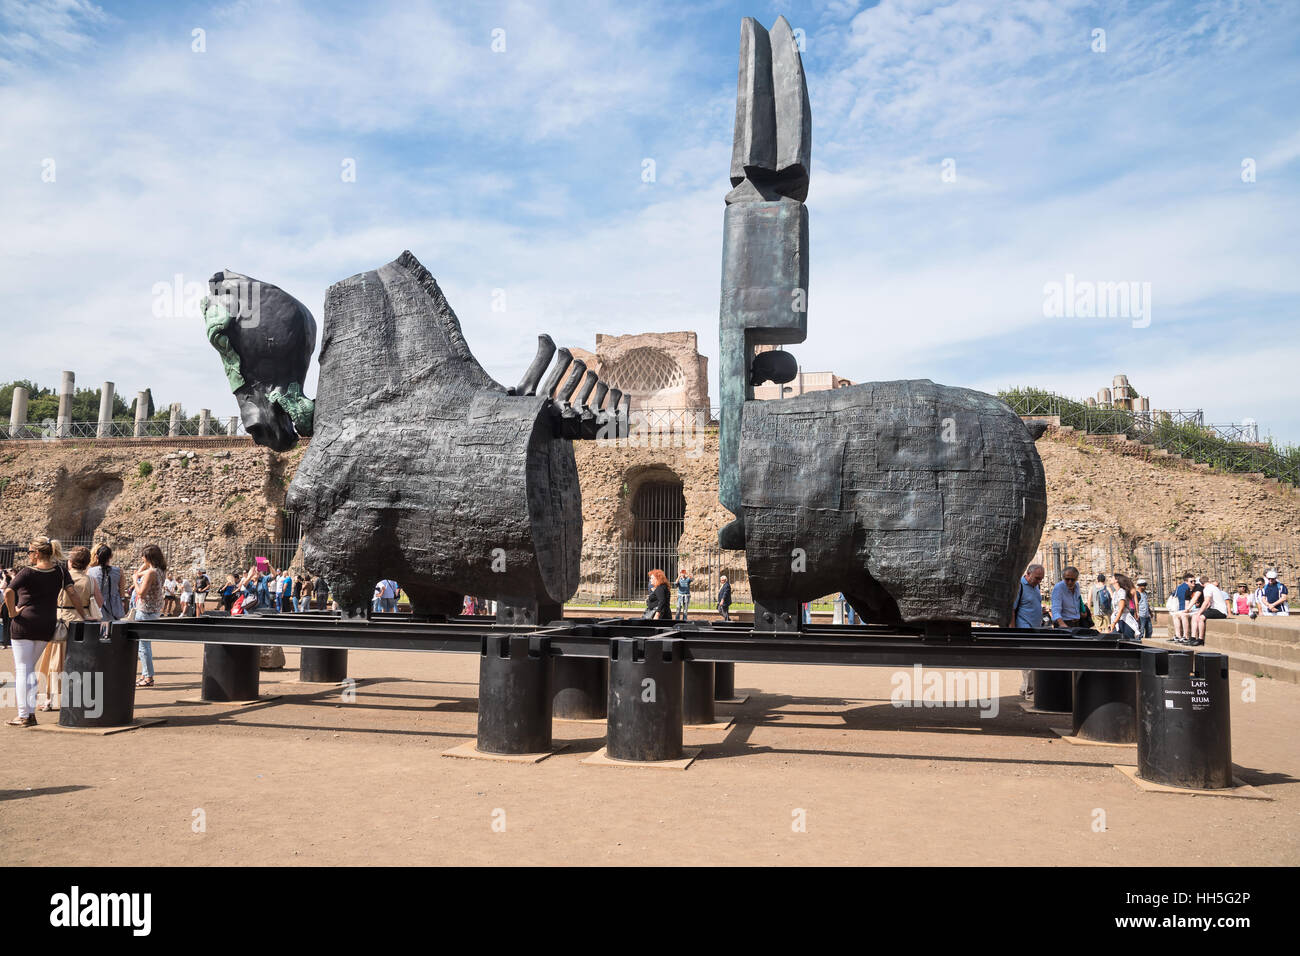 Traveling public sculpture, Lapidarium, Skeletal Horses, Stock Photo